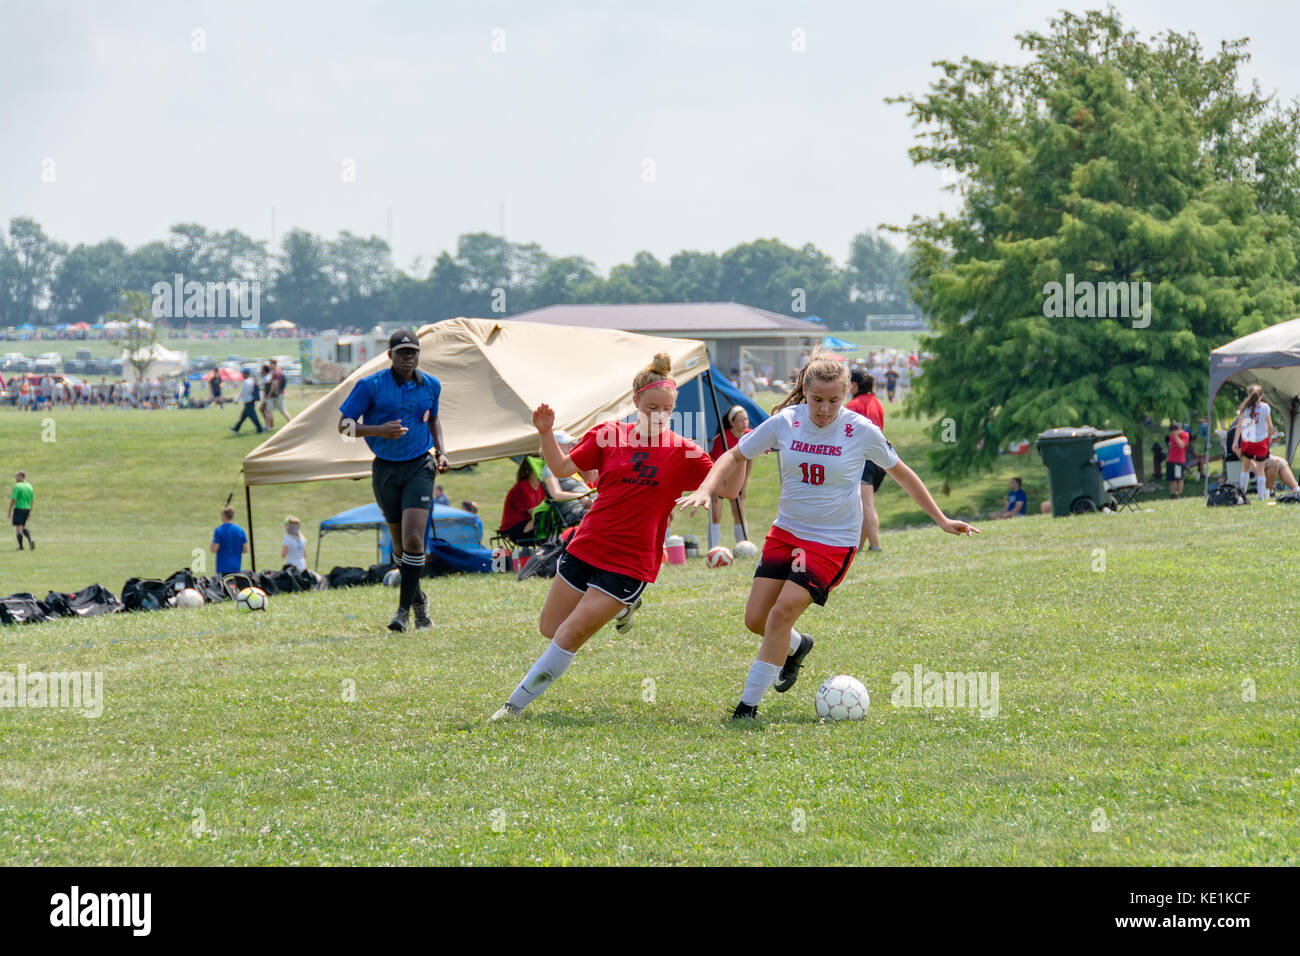 American high school adolescentes joue au soccer dans un tournoi de jeu Banque D'Images